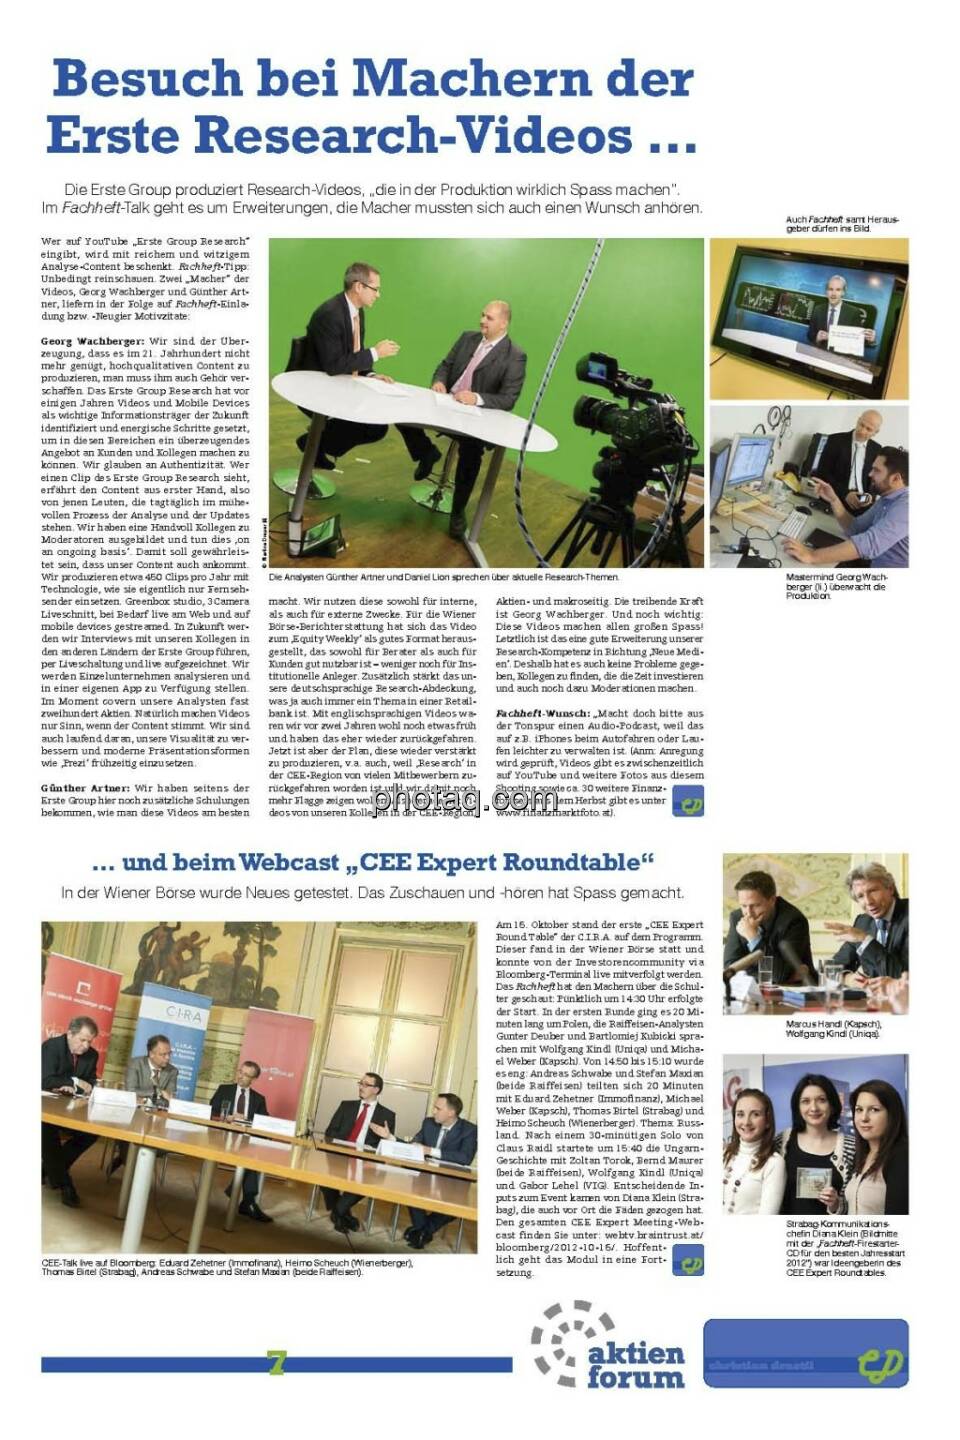 Seite 7 Fachheft 3: Günther Artner, Daniel Lion und Georg Wachberger über die Erste-Research-Videos, dazu ein Besuch beim CEE Expert Roundtable